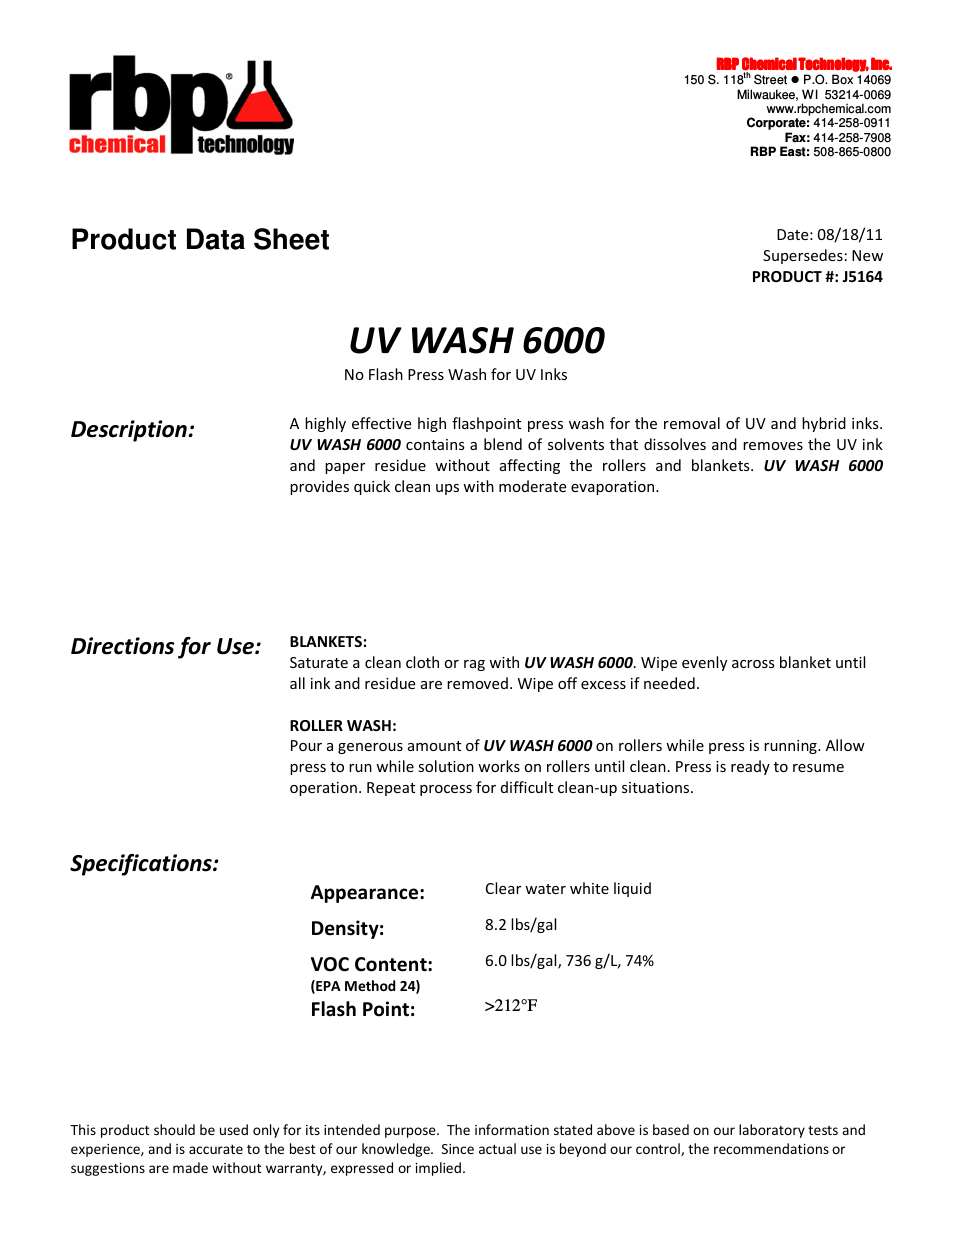 J5164 UV WASH 6000